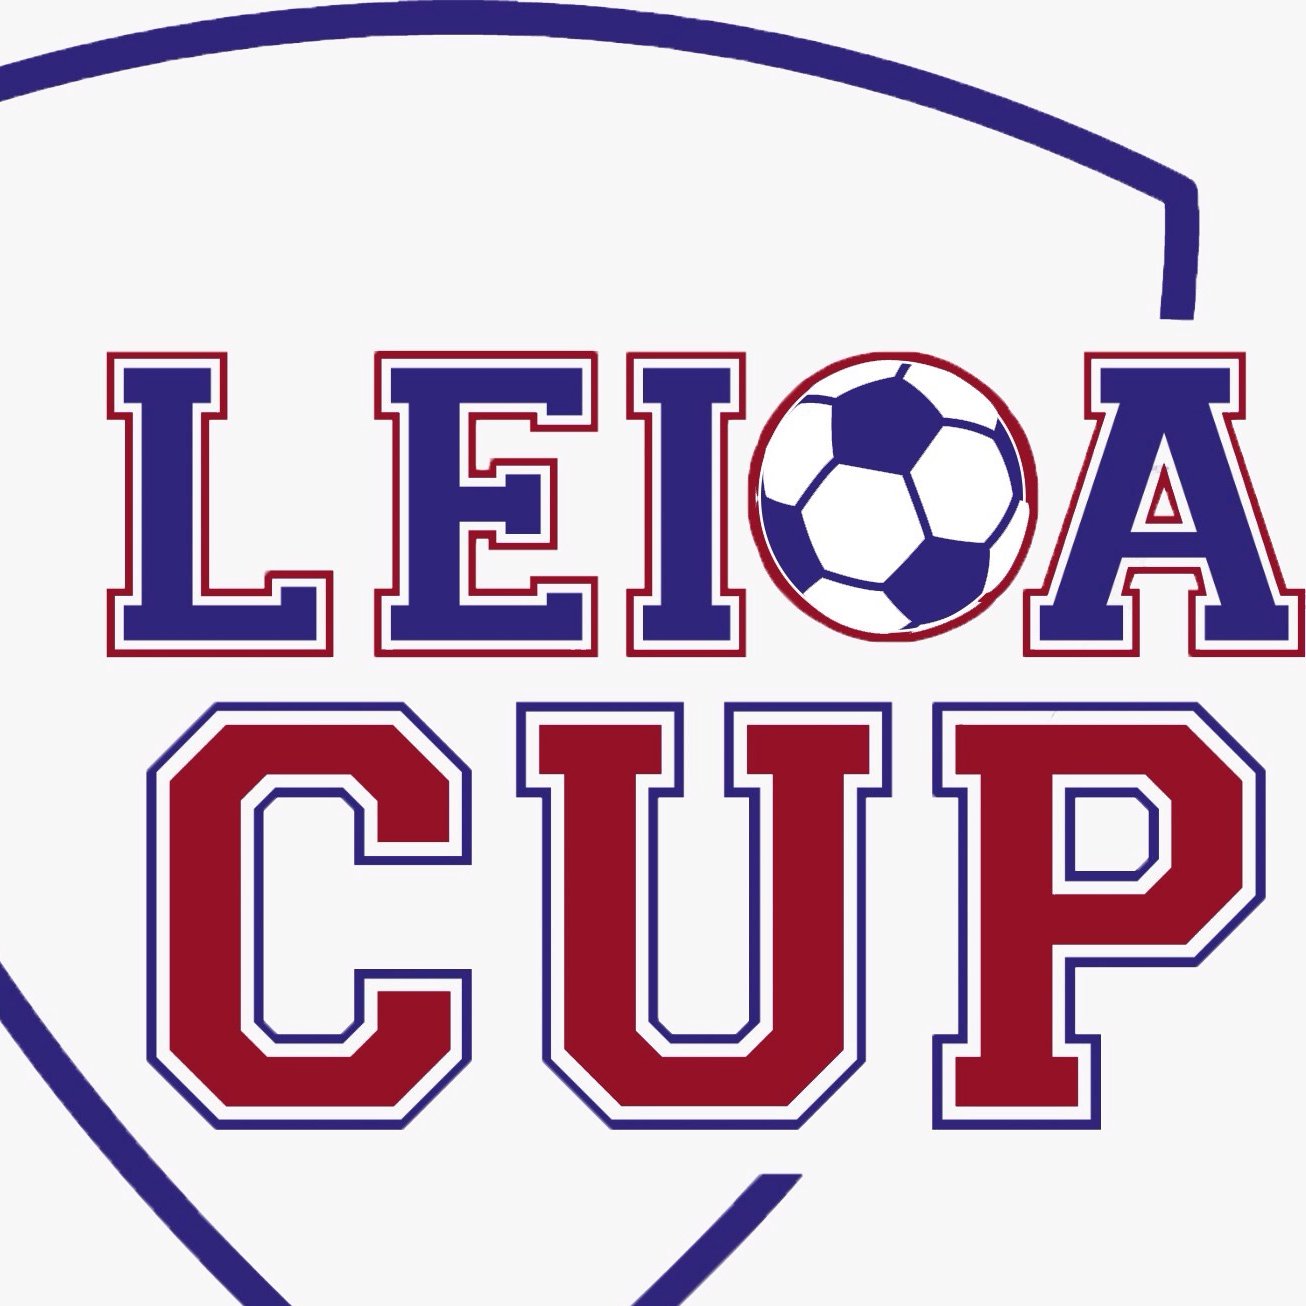 Cuenta oficial del Torneo Leioa Cup, competición navideña en categoría Infantil organizada por la S.D. Leioa y por el Lagun Artea.